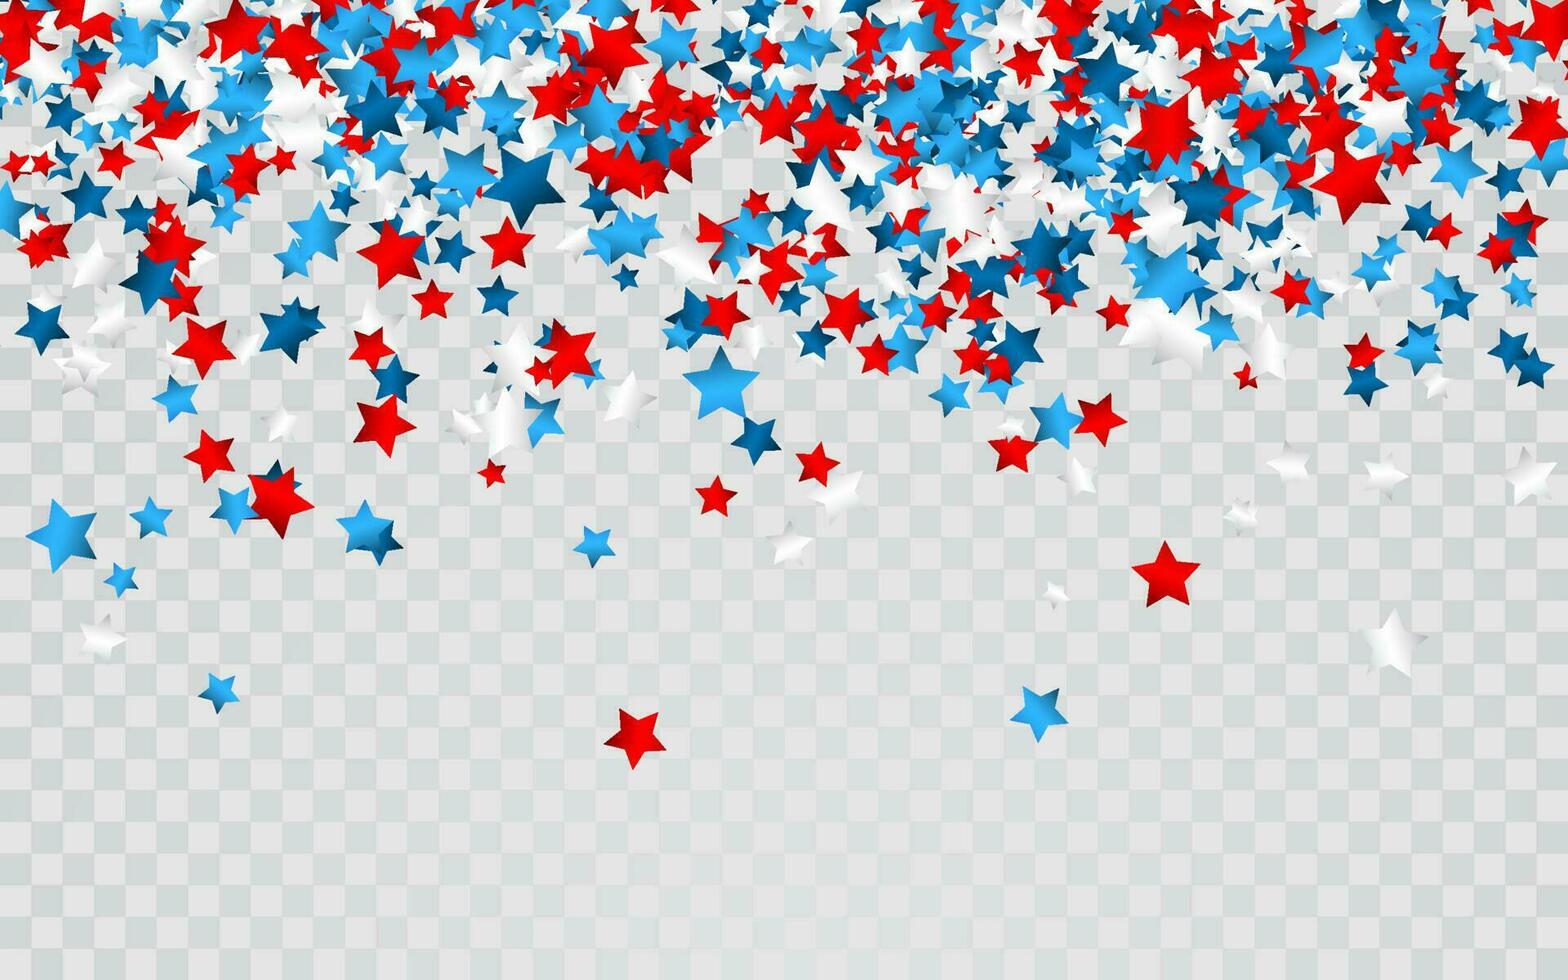 viering confetti in nationaal kleuren van Verenigde Staten van Amerika. vakantie confetti in ons vlag kleuren. 4e juli onafhankelijkheid dag achtergrond vector